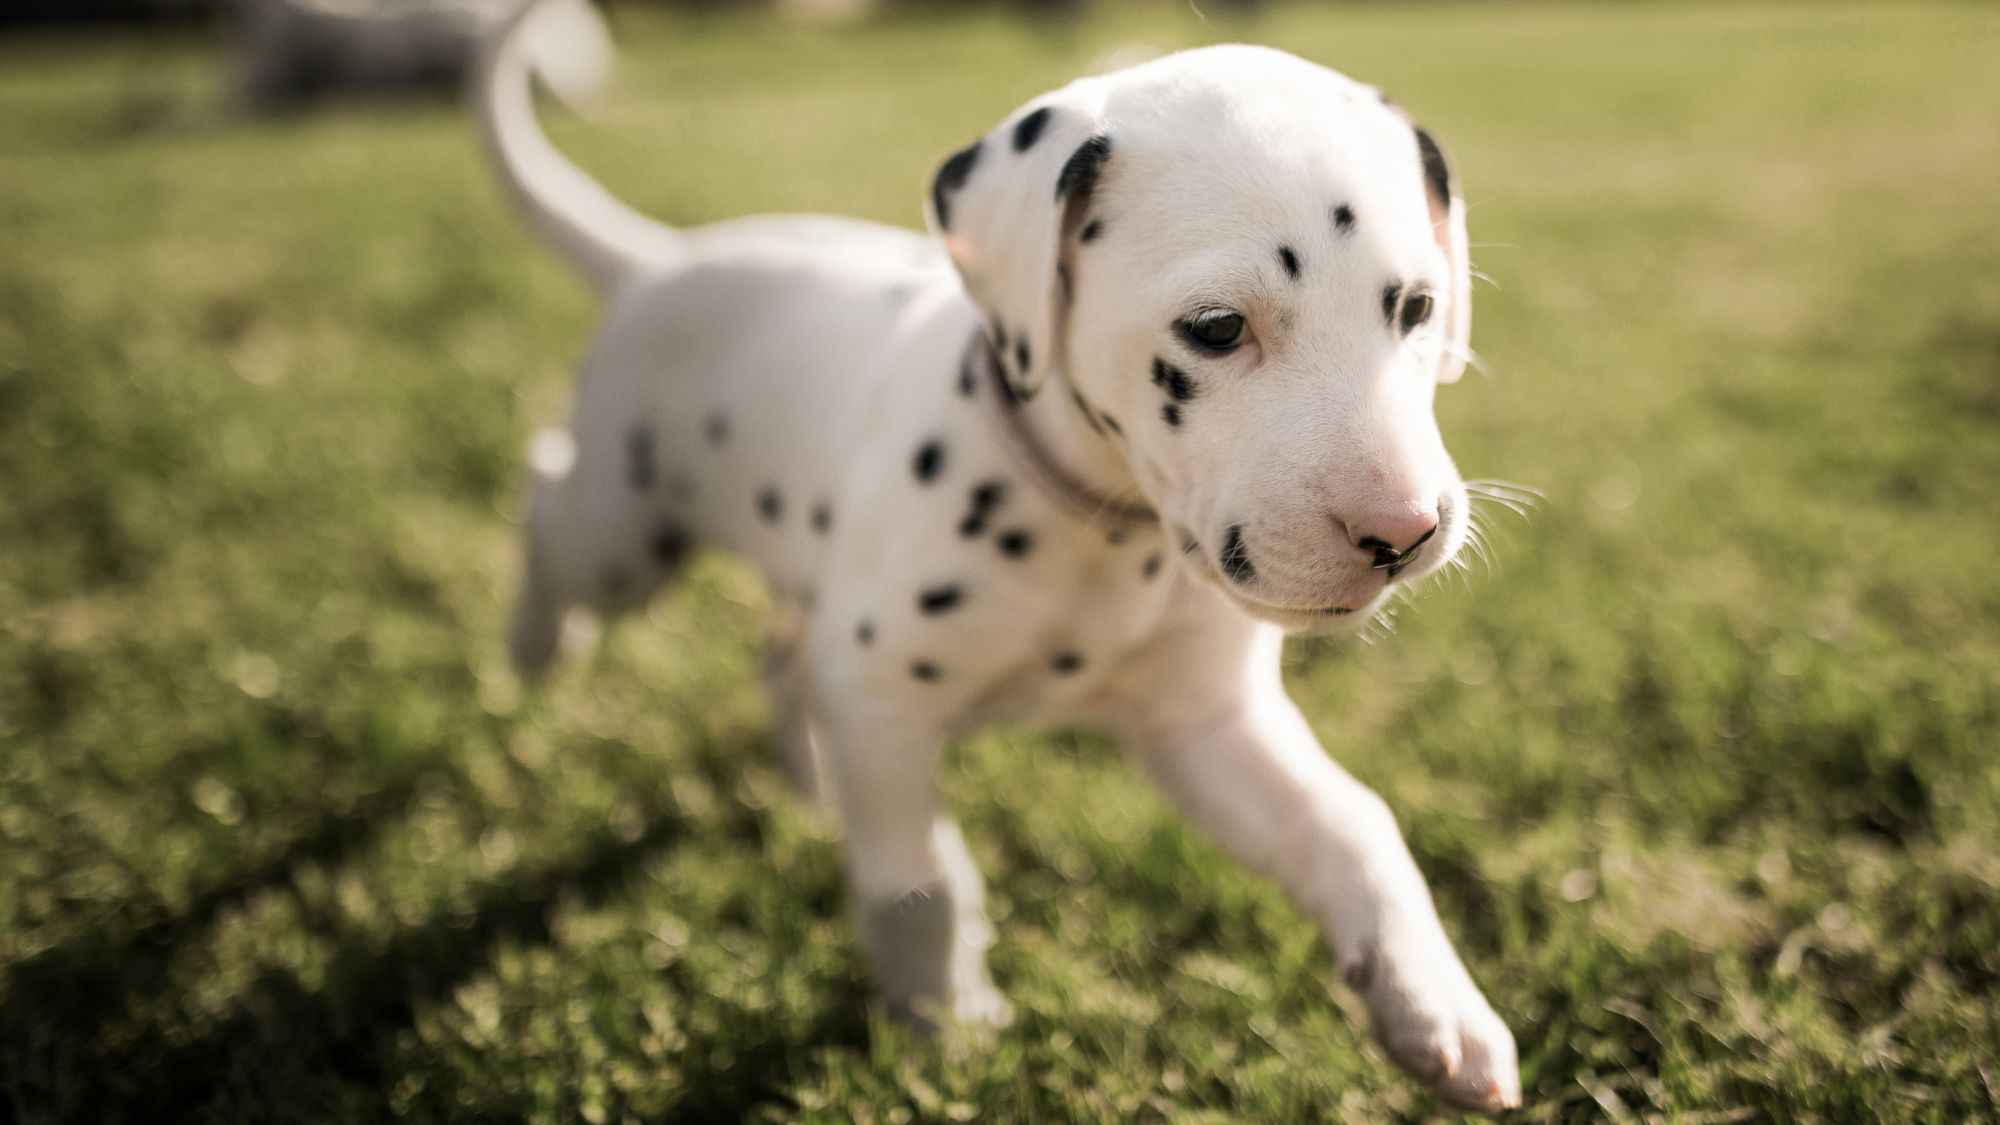 Dalmatian puppy running outdoors in a garden